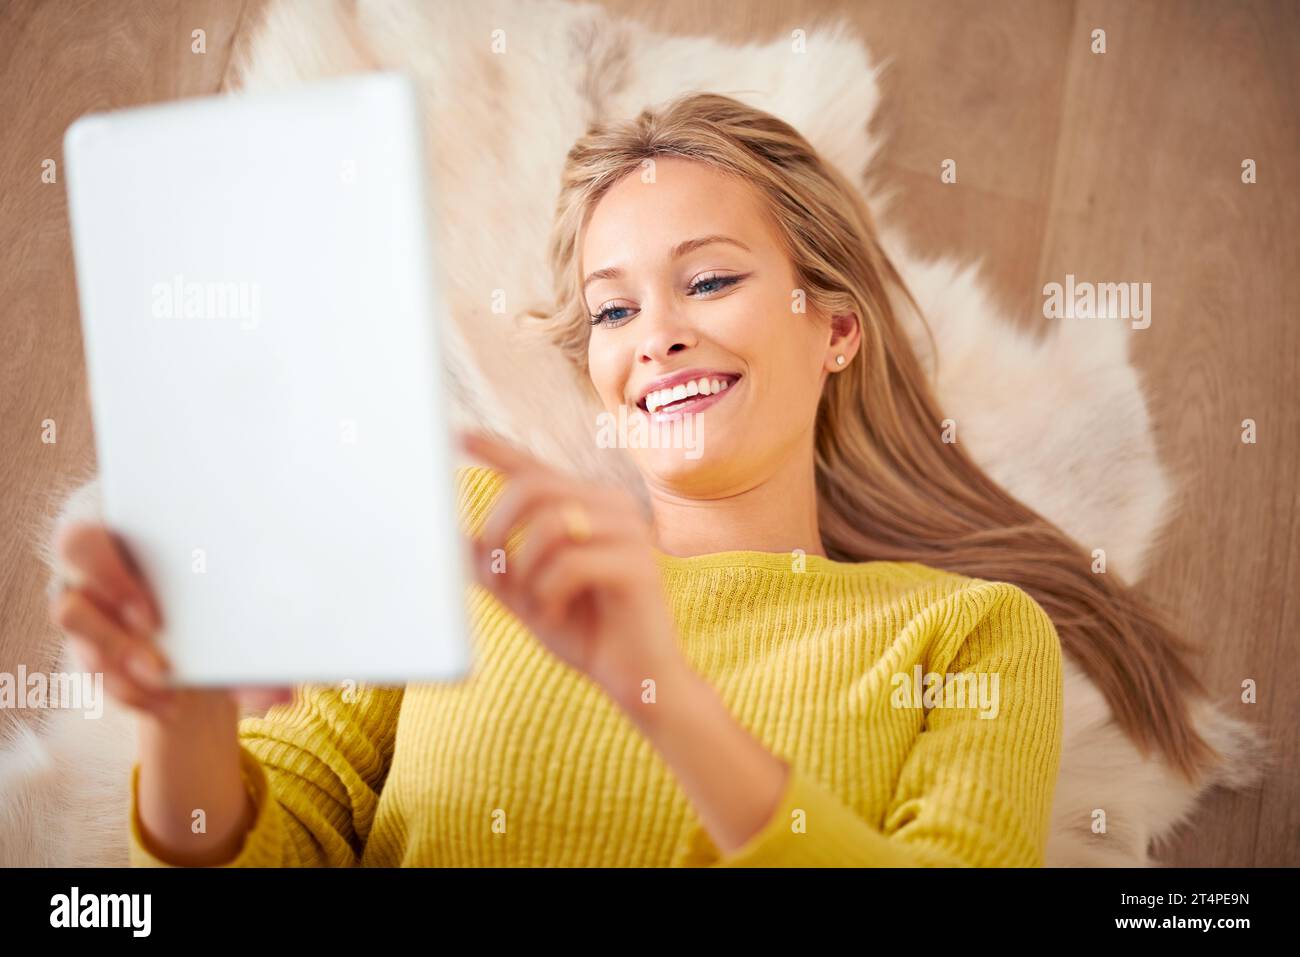 Über tausend Freundschaftsanfragen. Eine junge Frau, die auf dem Boden liegt und ihr digitales Tablet hält. Stockfoto